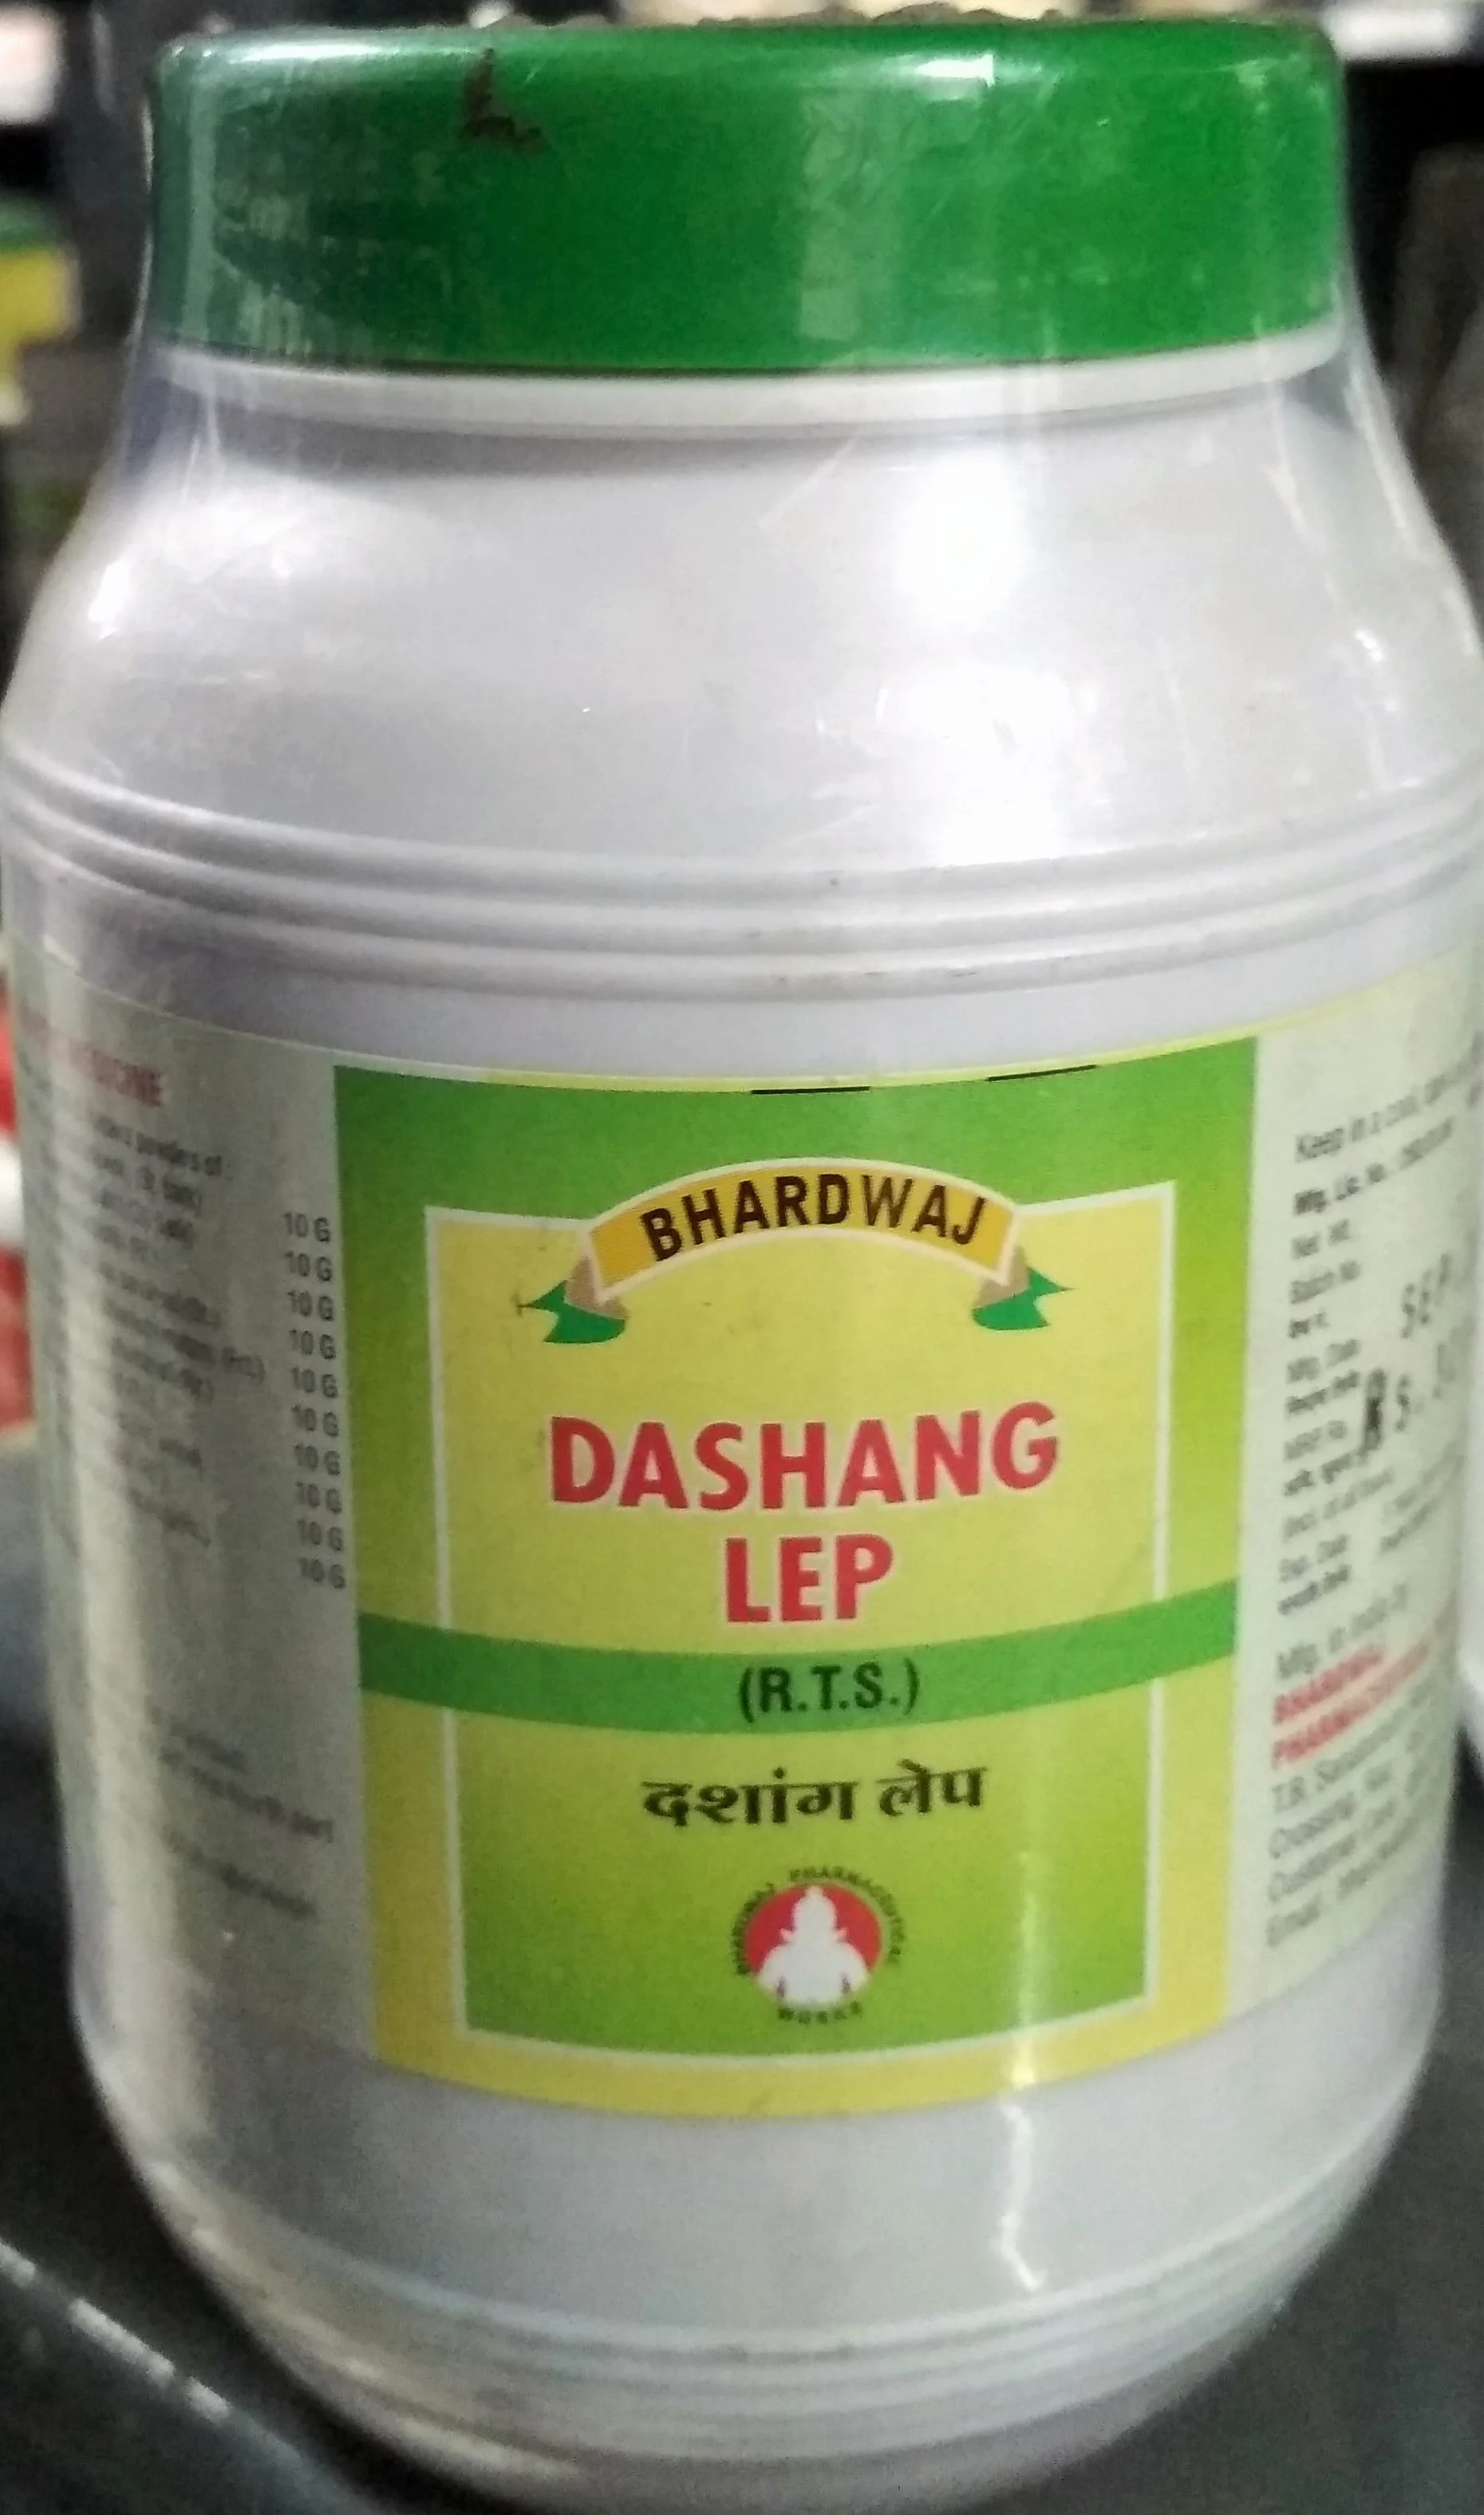 dashang lep 1 kg upto 20% off bhardwaj pharmaceuticals indore